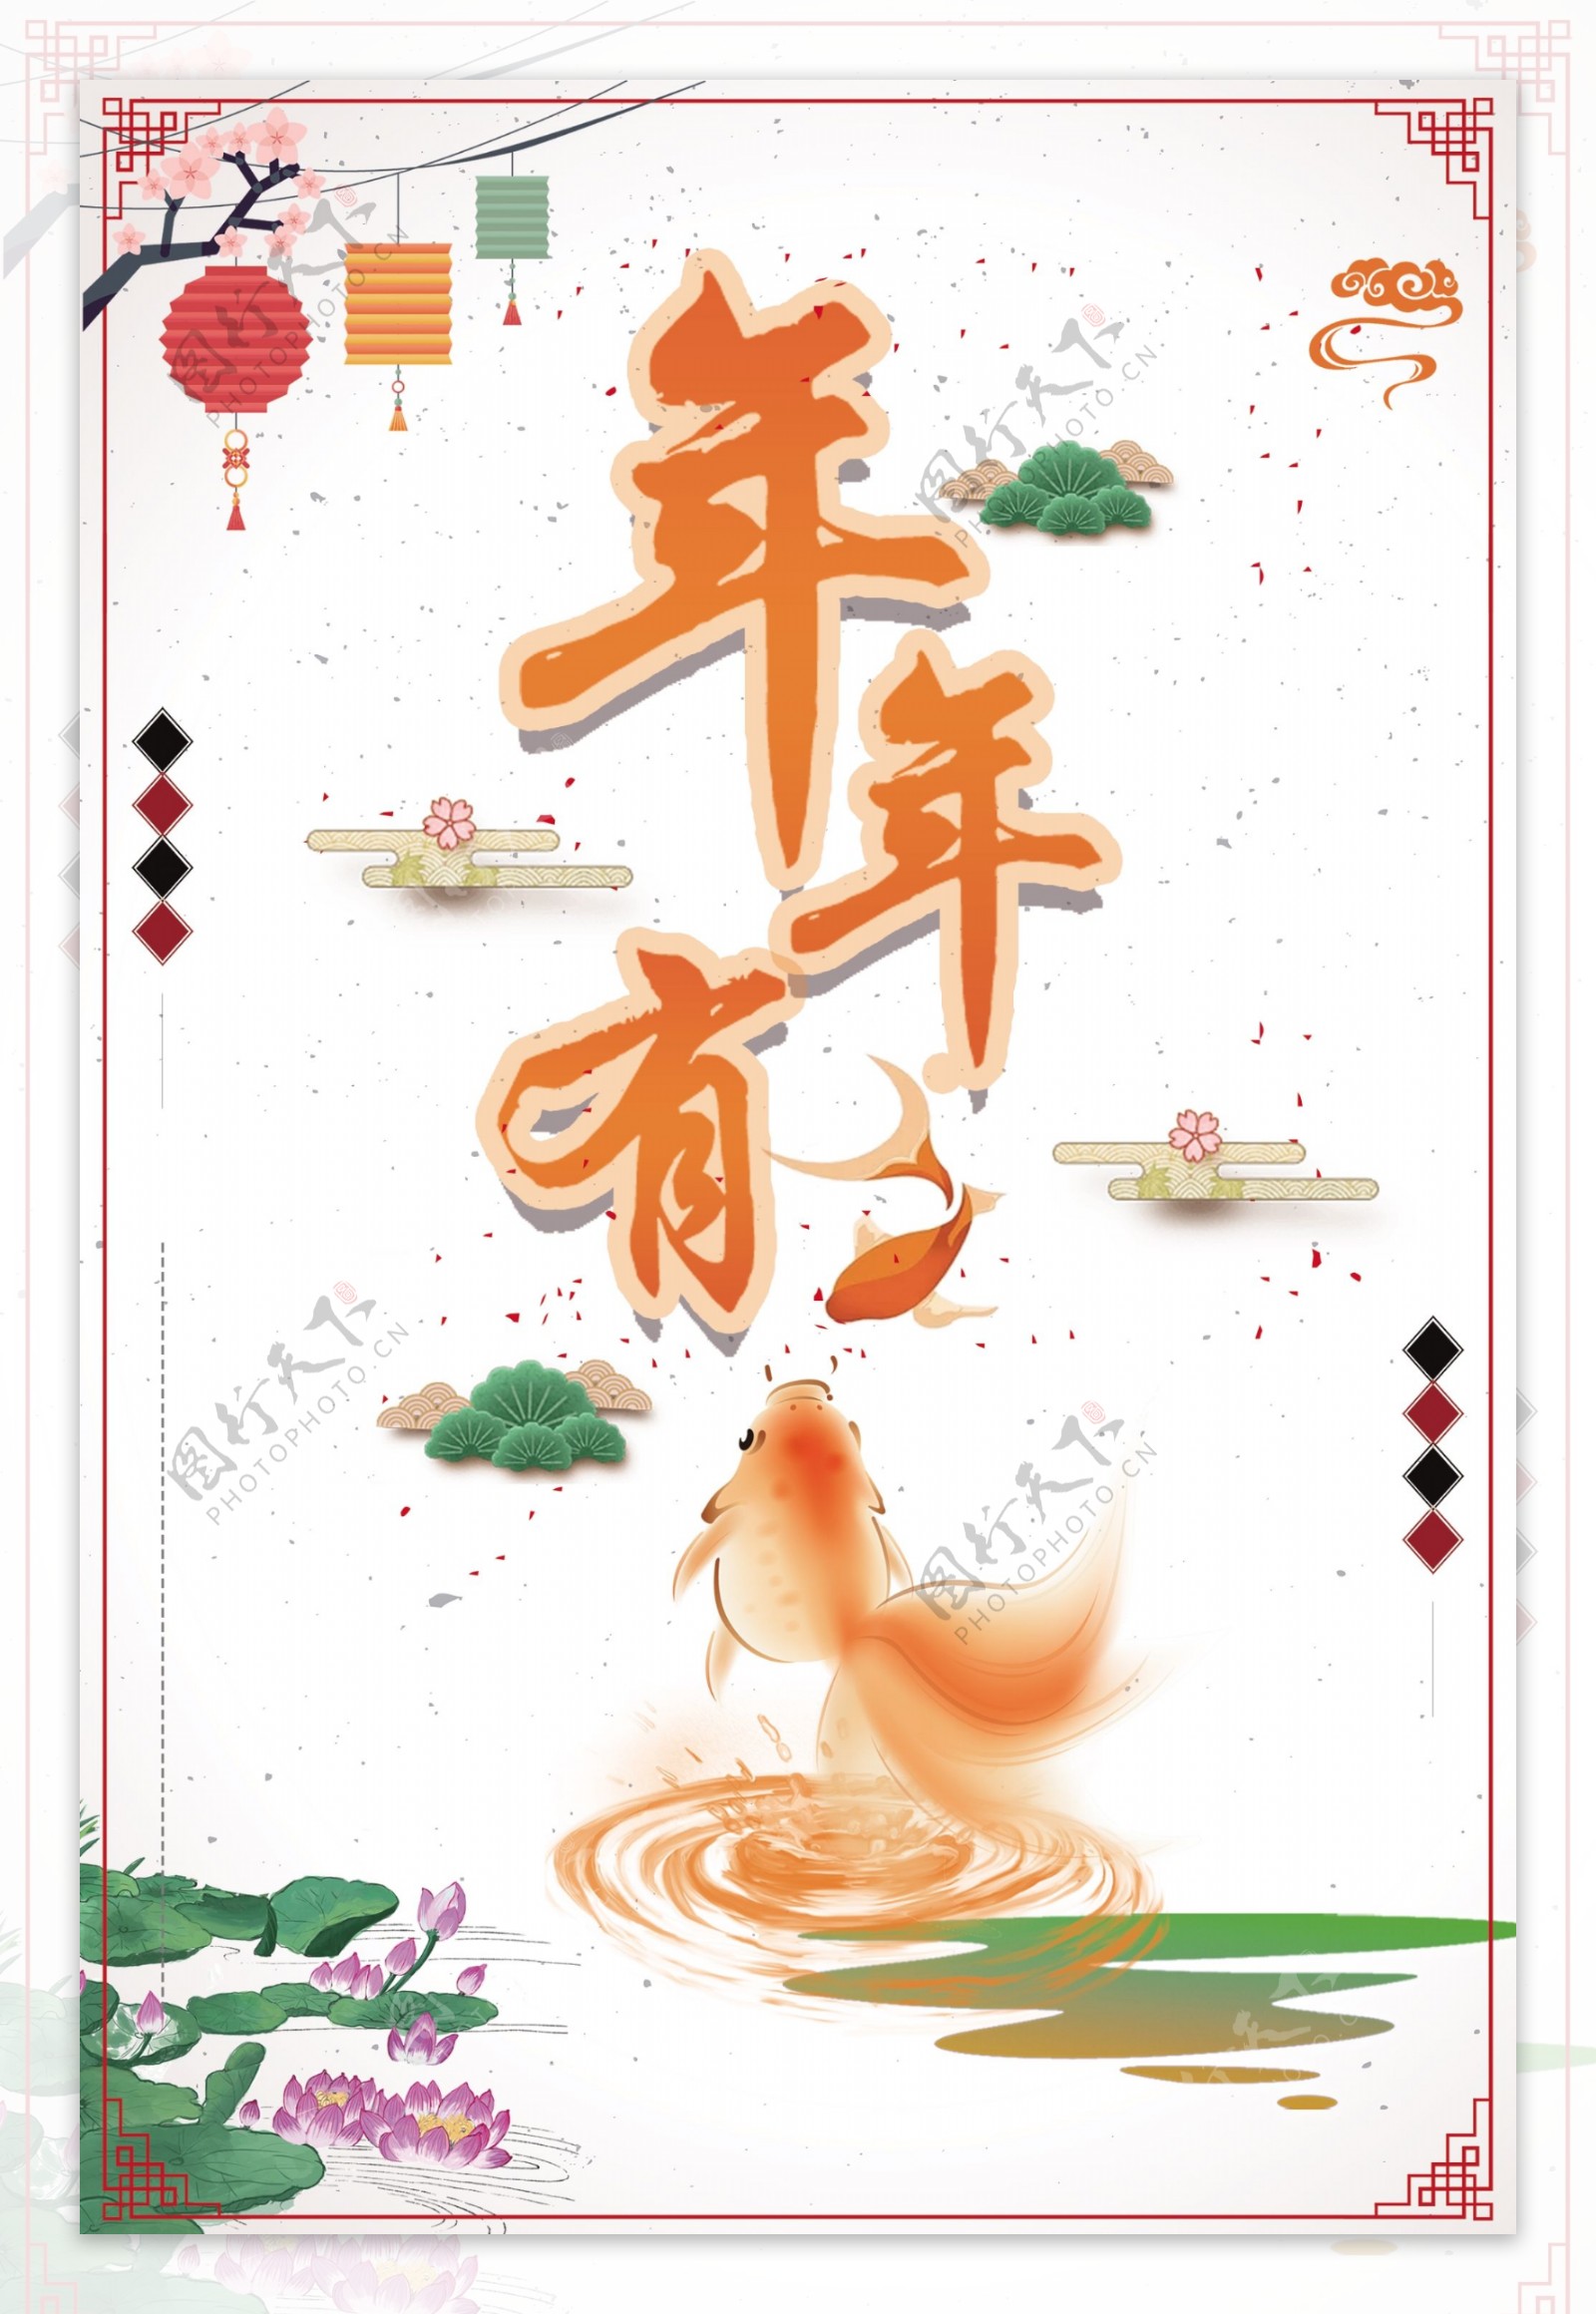 2018狗年春节海报设计